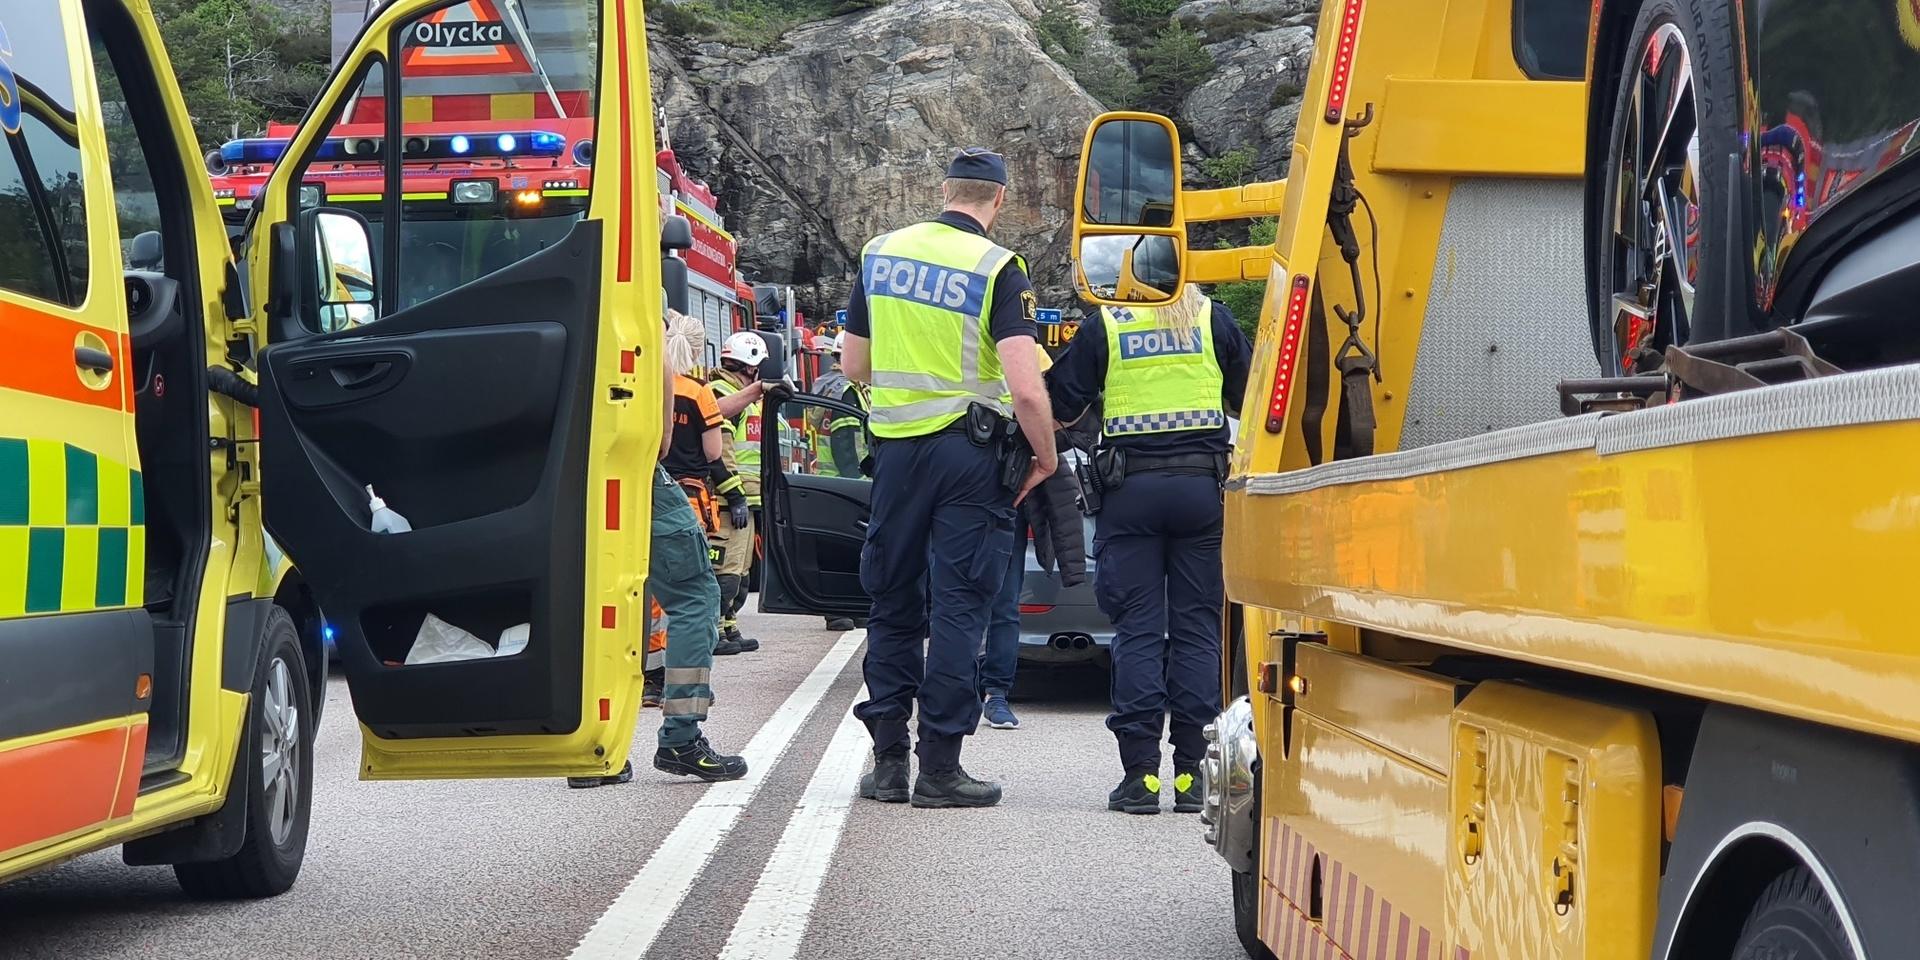 Olyckan på Källösundsbron inträffade strax innan klockan 12.30 på tisdagen. 